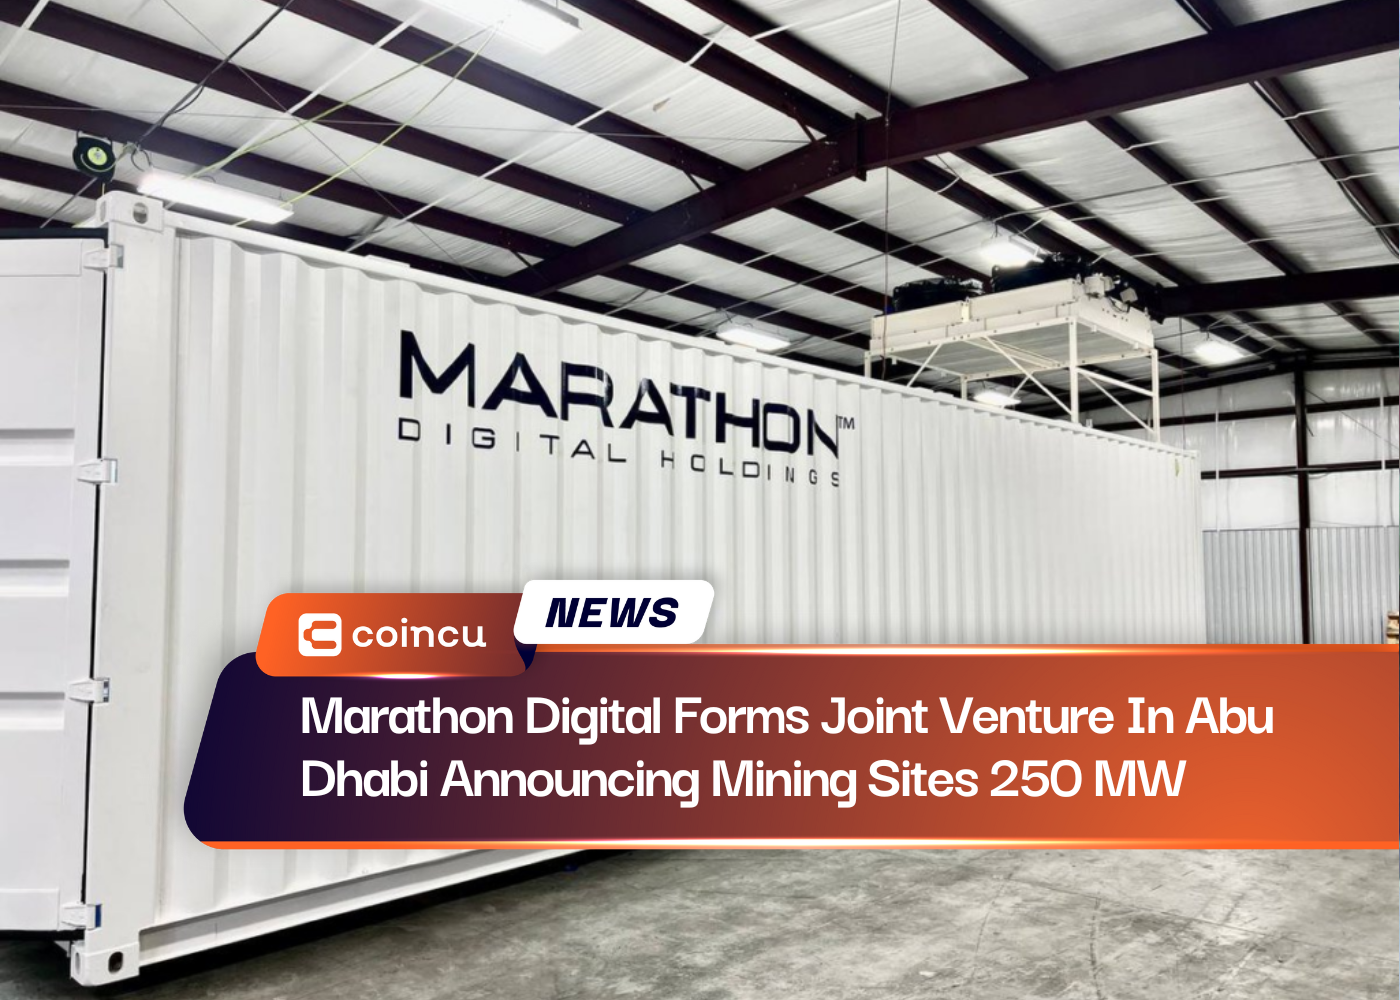 Marathon Digital forma joint venture em Abu Dhabi anunciando locais de mineração de 250 MW